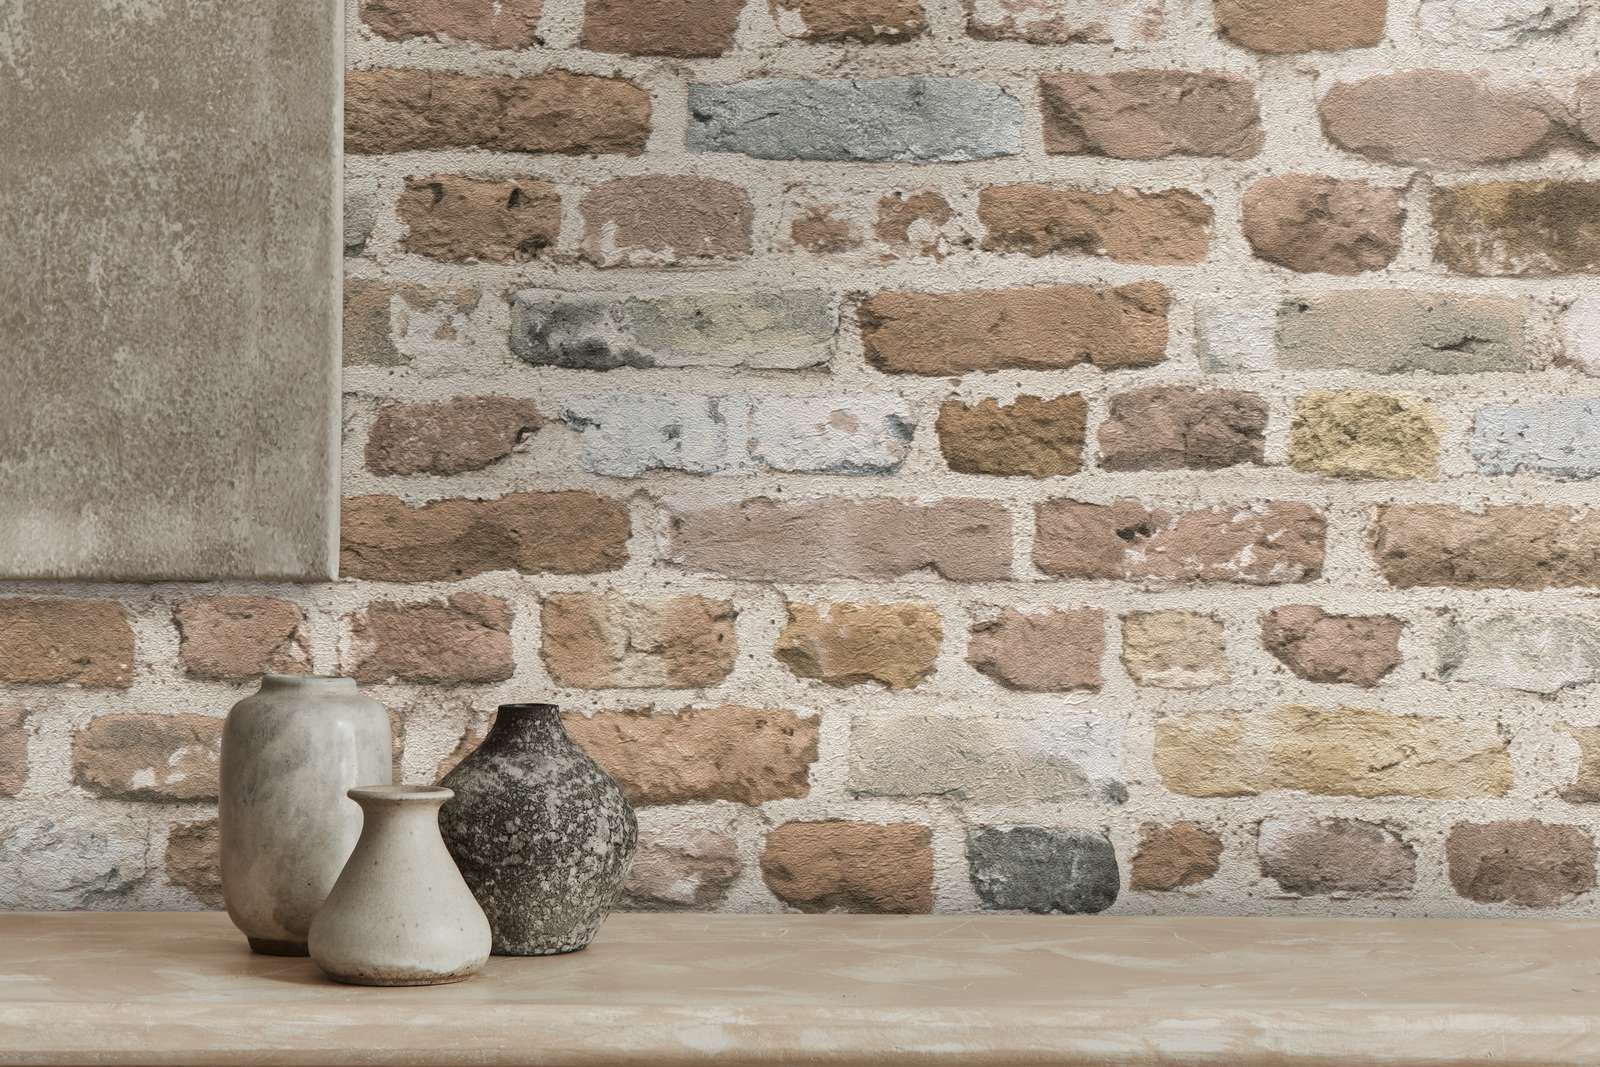             Carta da parati in pietra marrone con ottica per pareti in mattoni - Marrone, grigio
        